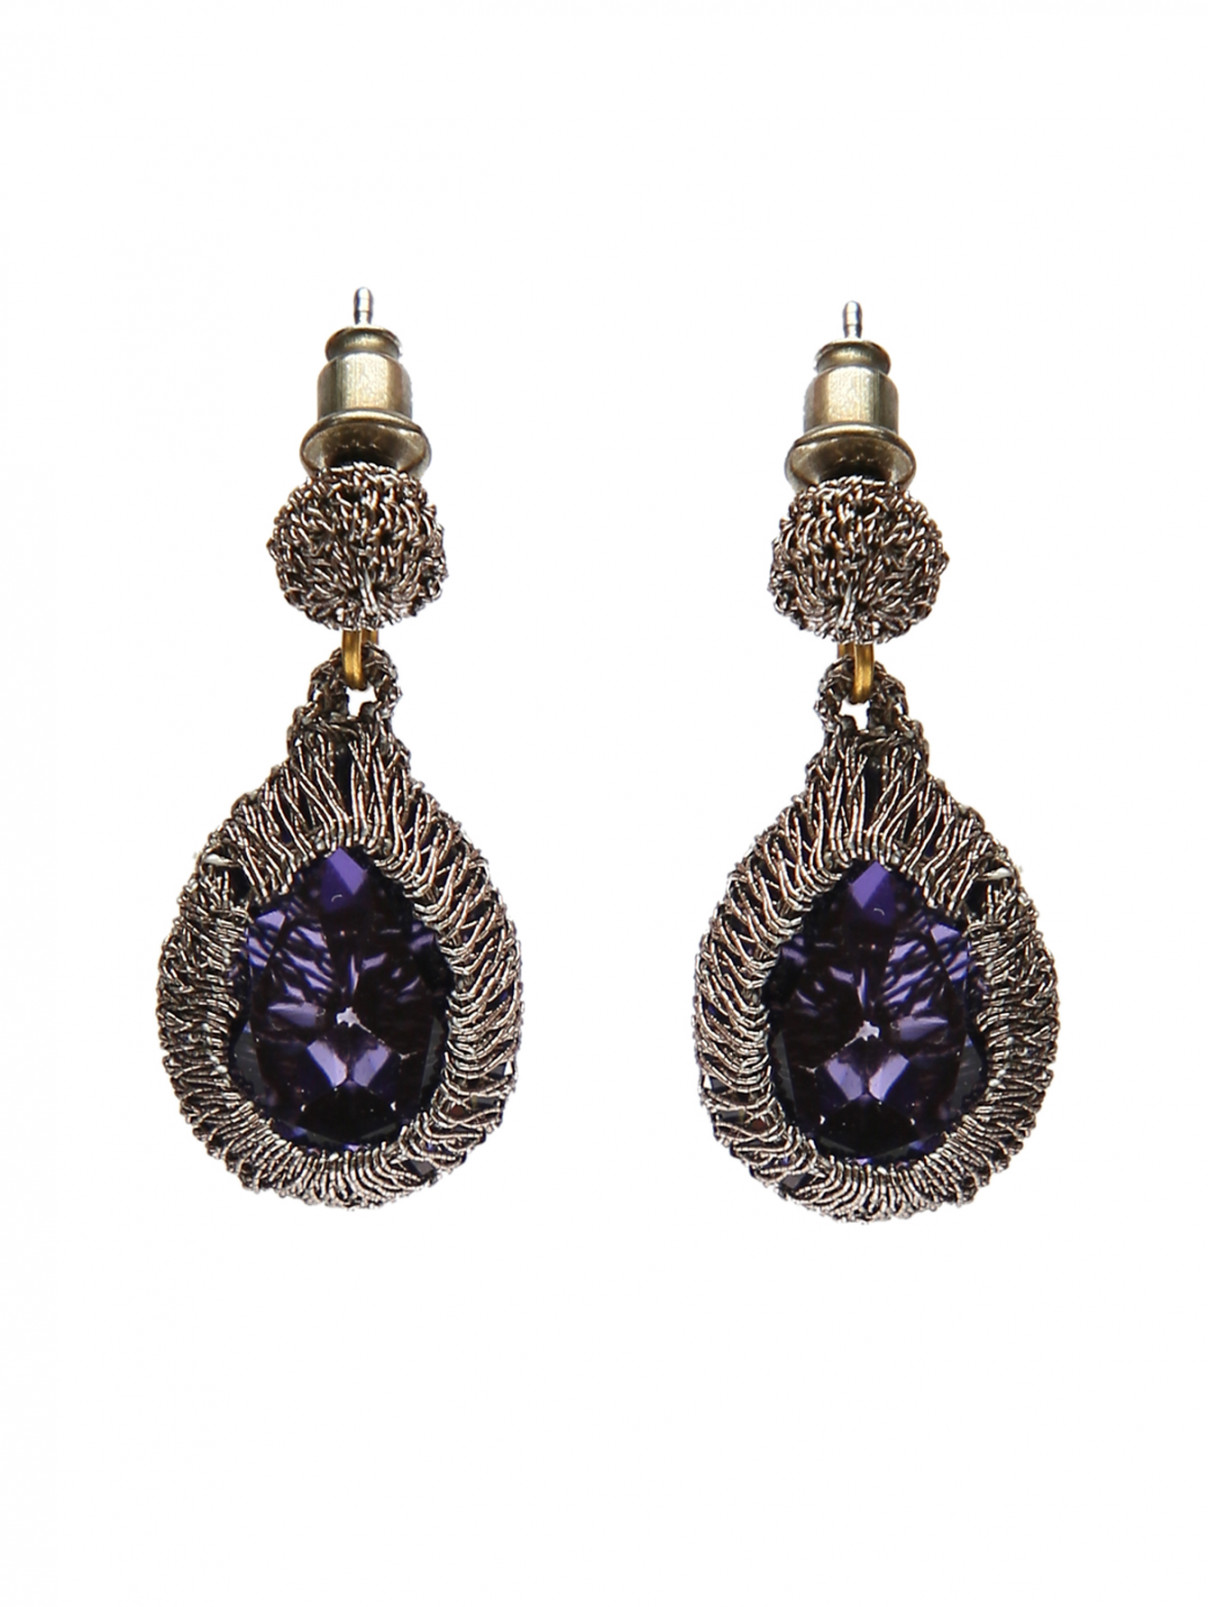 Серьги из металла с подвесками из кристаллов St. Erasmus  –  Общий вид  – Цвет:  Фиолетовый